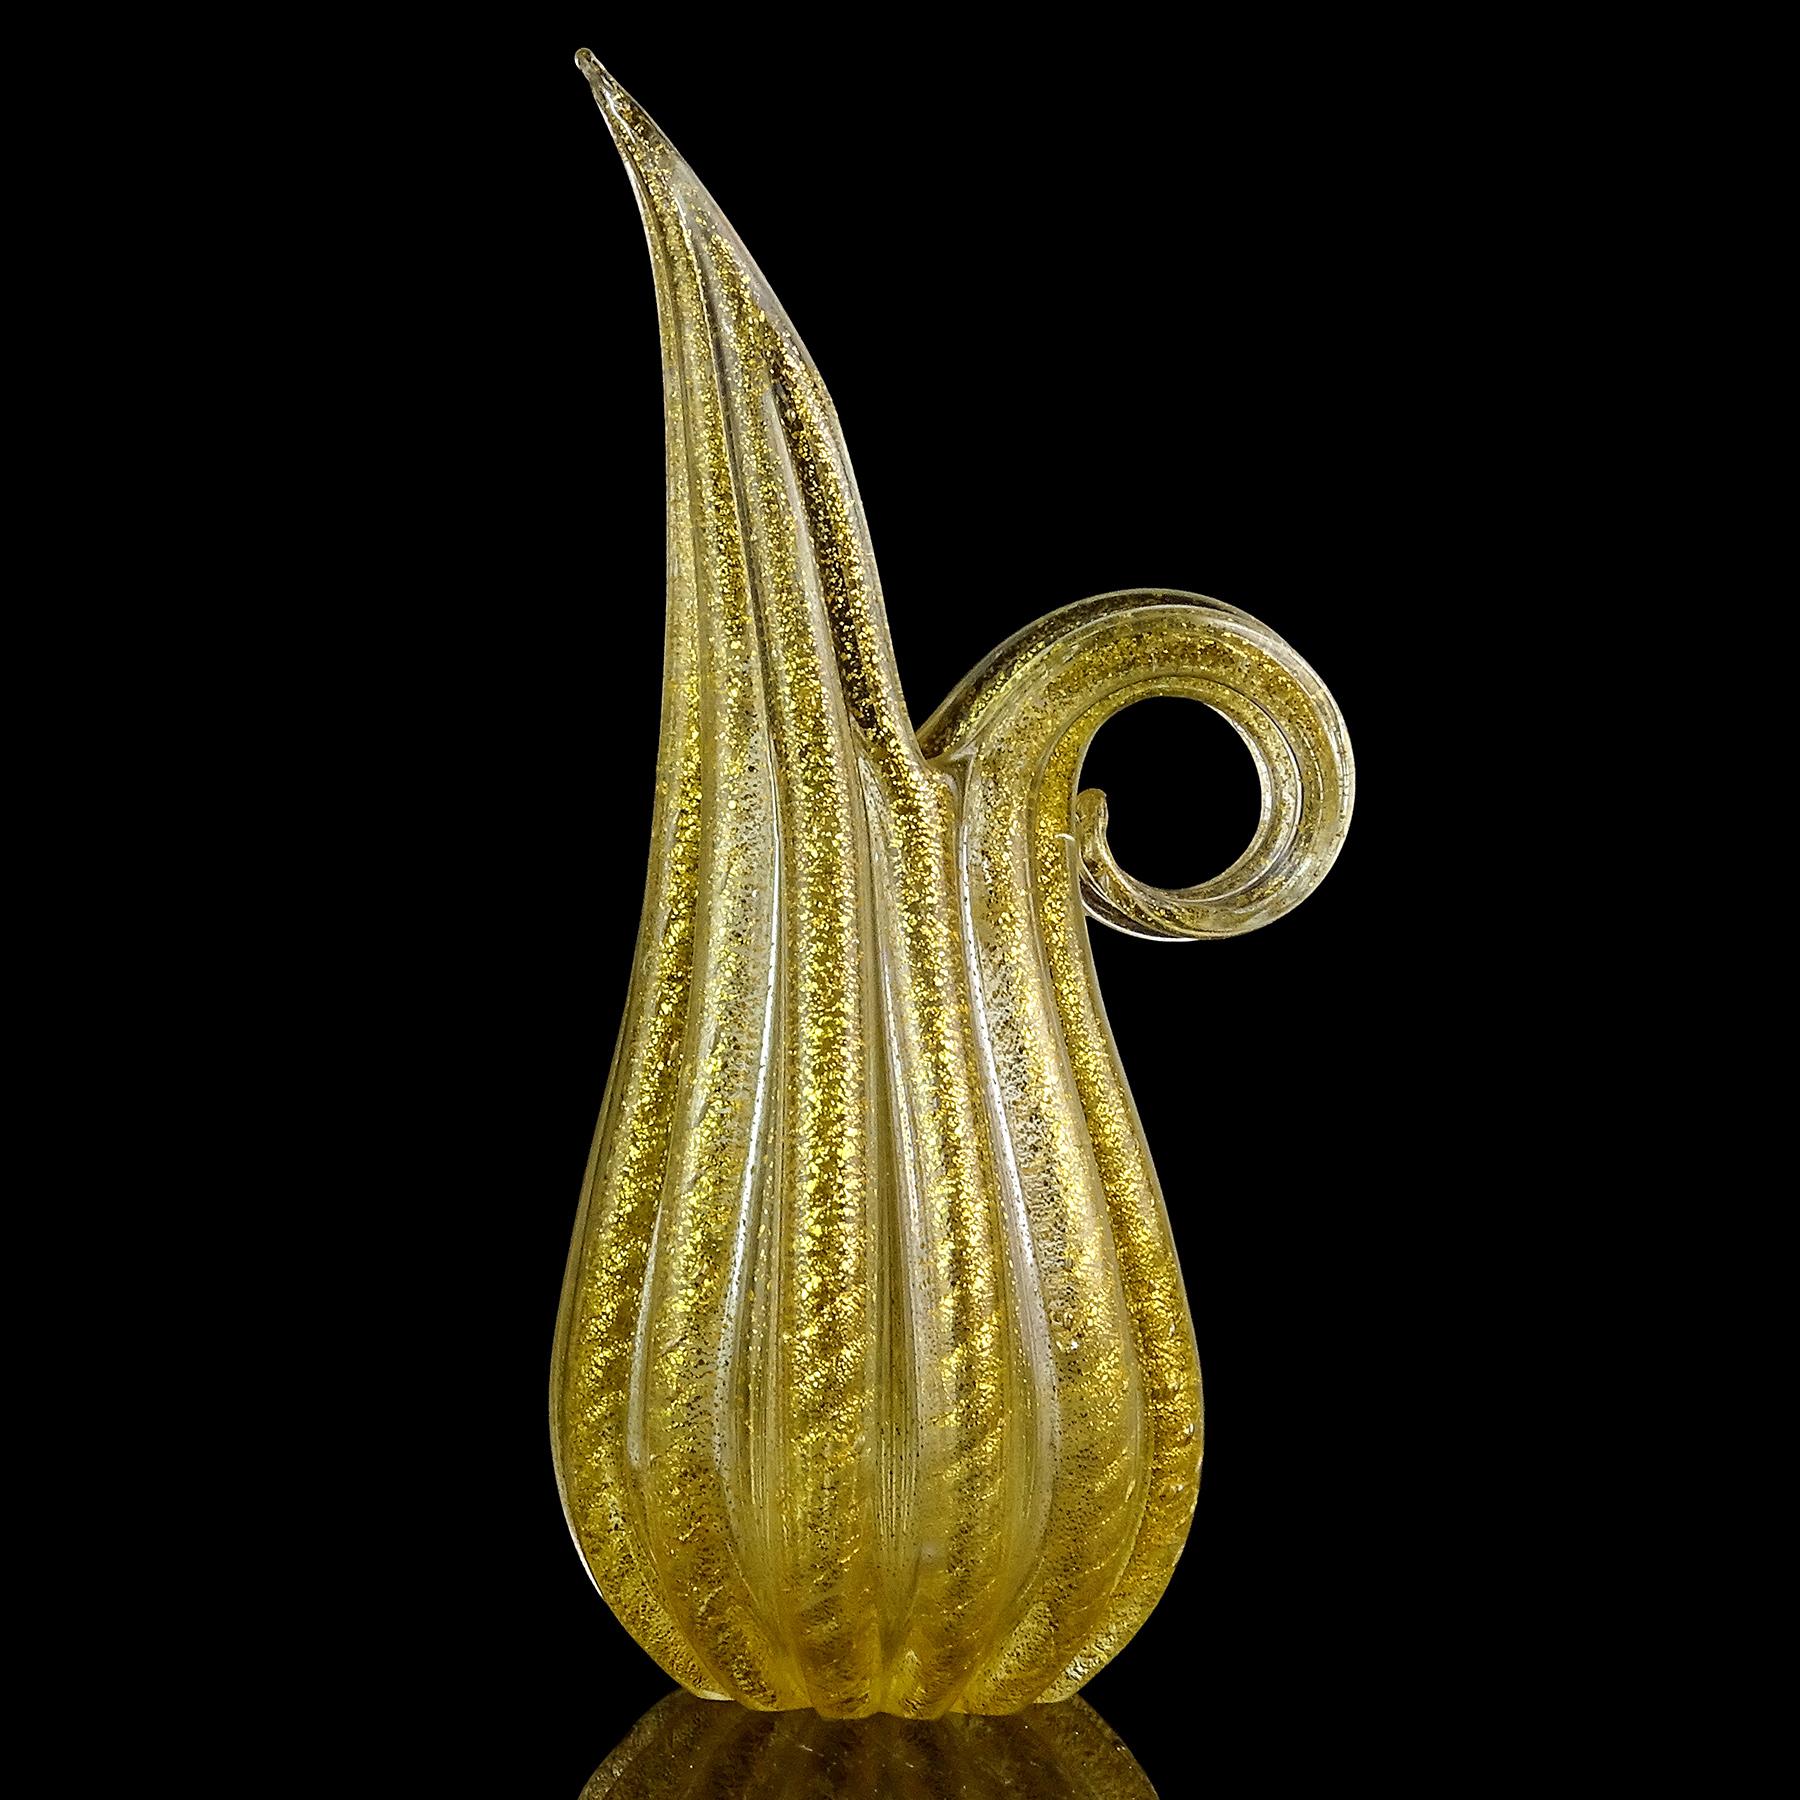 Magnifique pichet / vase en verre d'art italien soufflé à la main de Murano, avec des taches d'or et une surface striée. Documenté au designer Ercole Barovier, pour la société Barovier e Toso. La pièce présente un motif nervuré avec des cordes d'or,